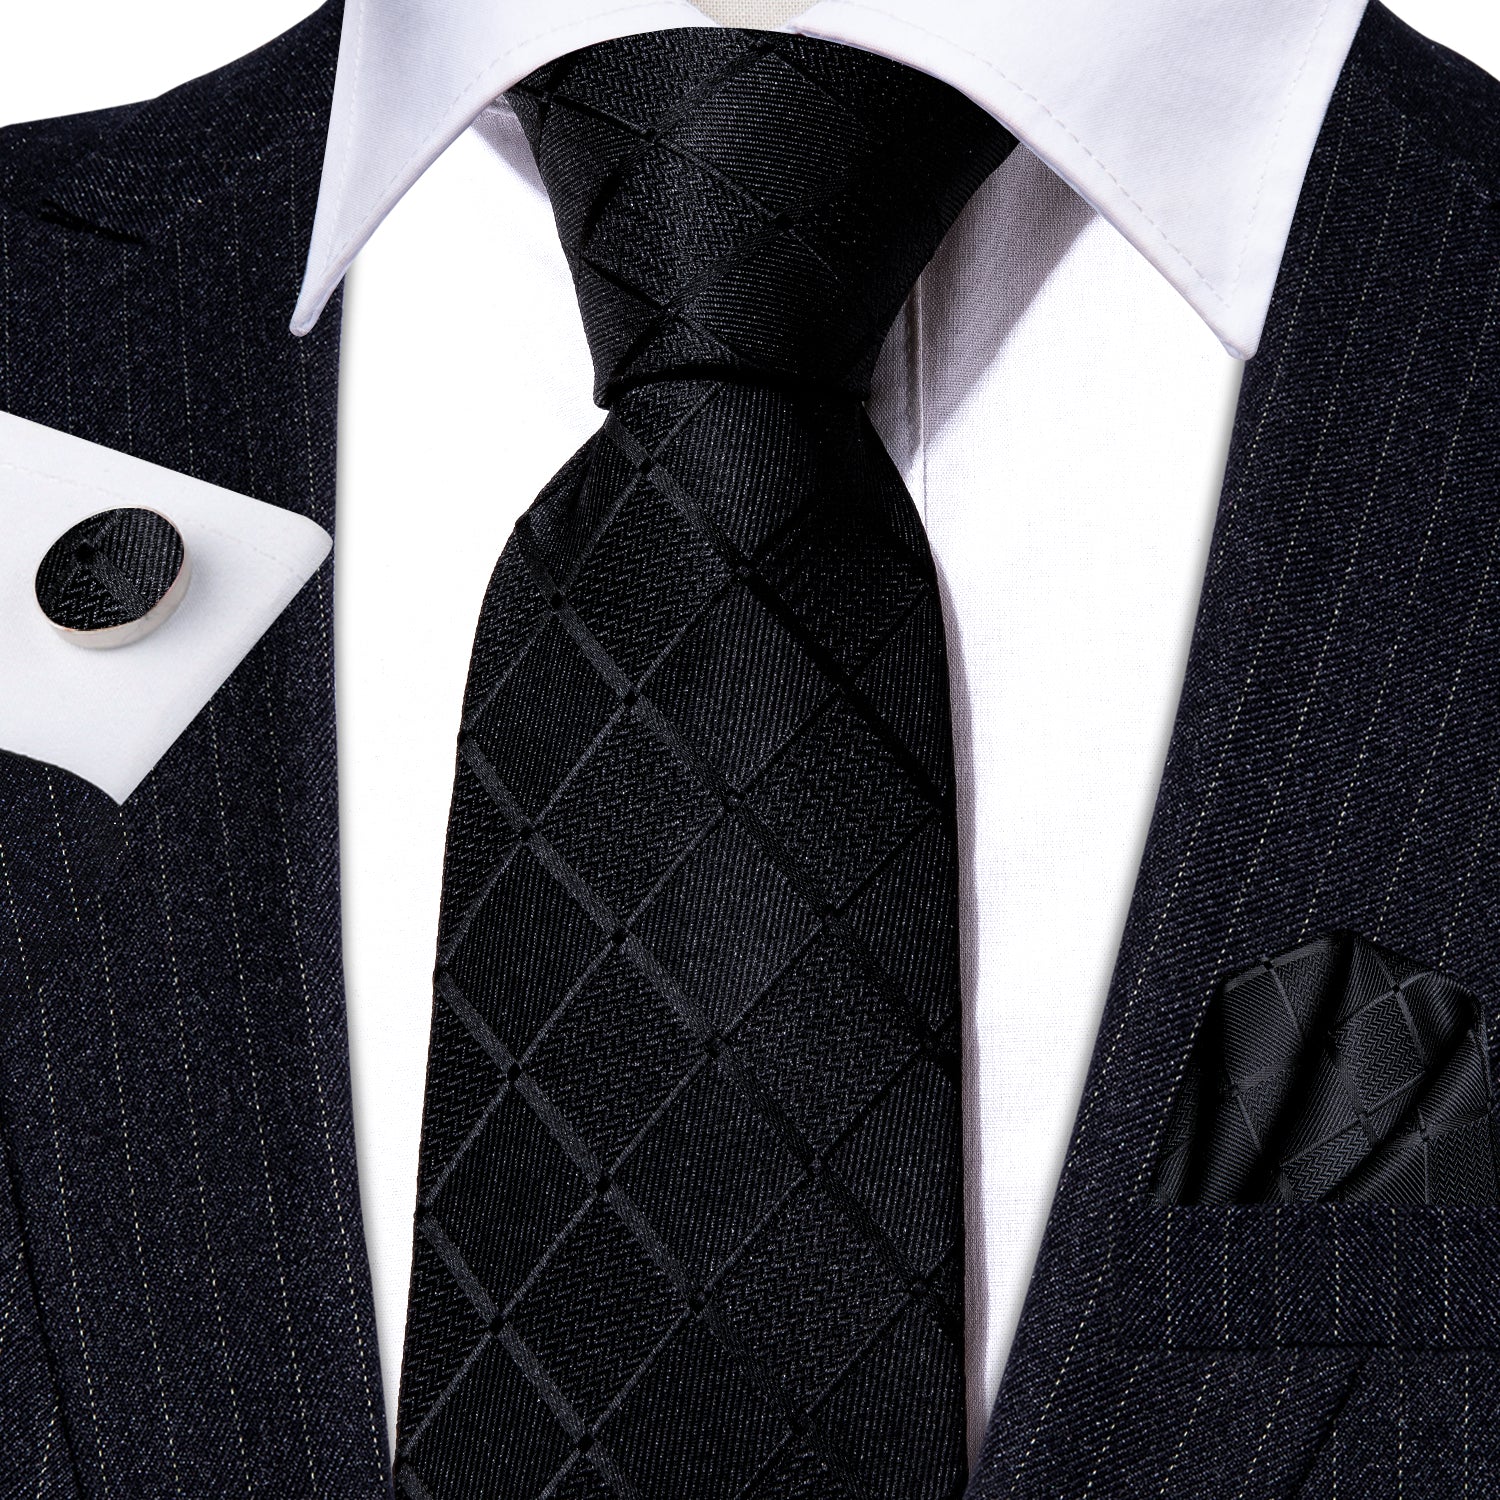 Barry.wang Black Tie Plaid Silk Men's Tie Set Tie Pocket Square Cufflinks Set